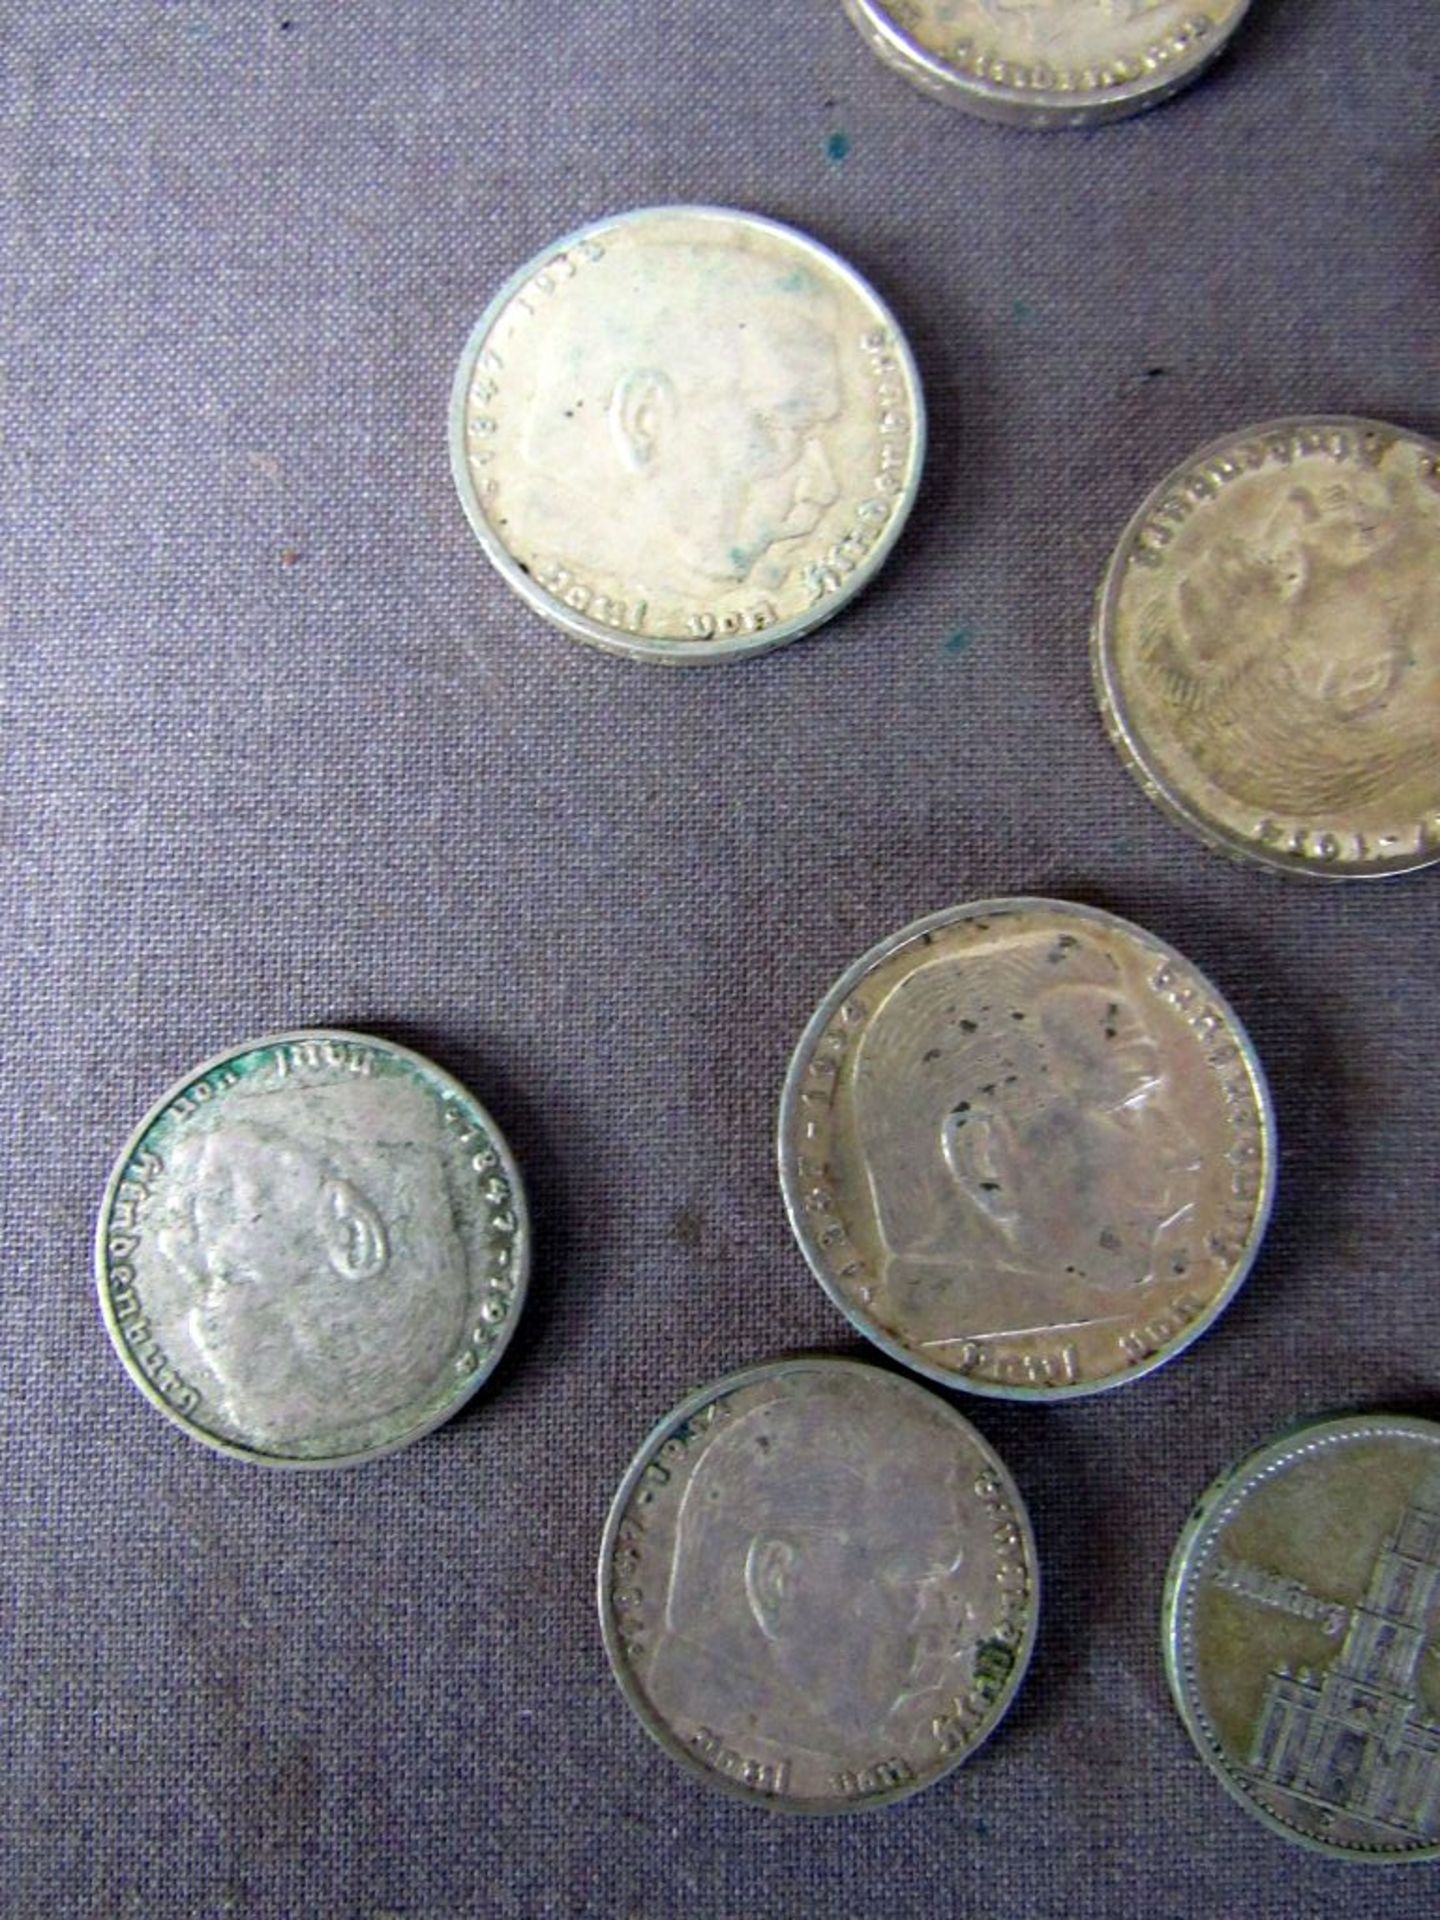 Münzen 3.Reich 5 und 2 Mark Stücke - Image 2 of 8